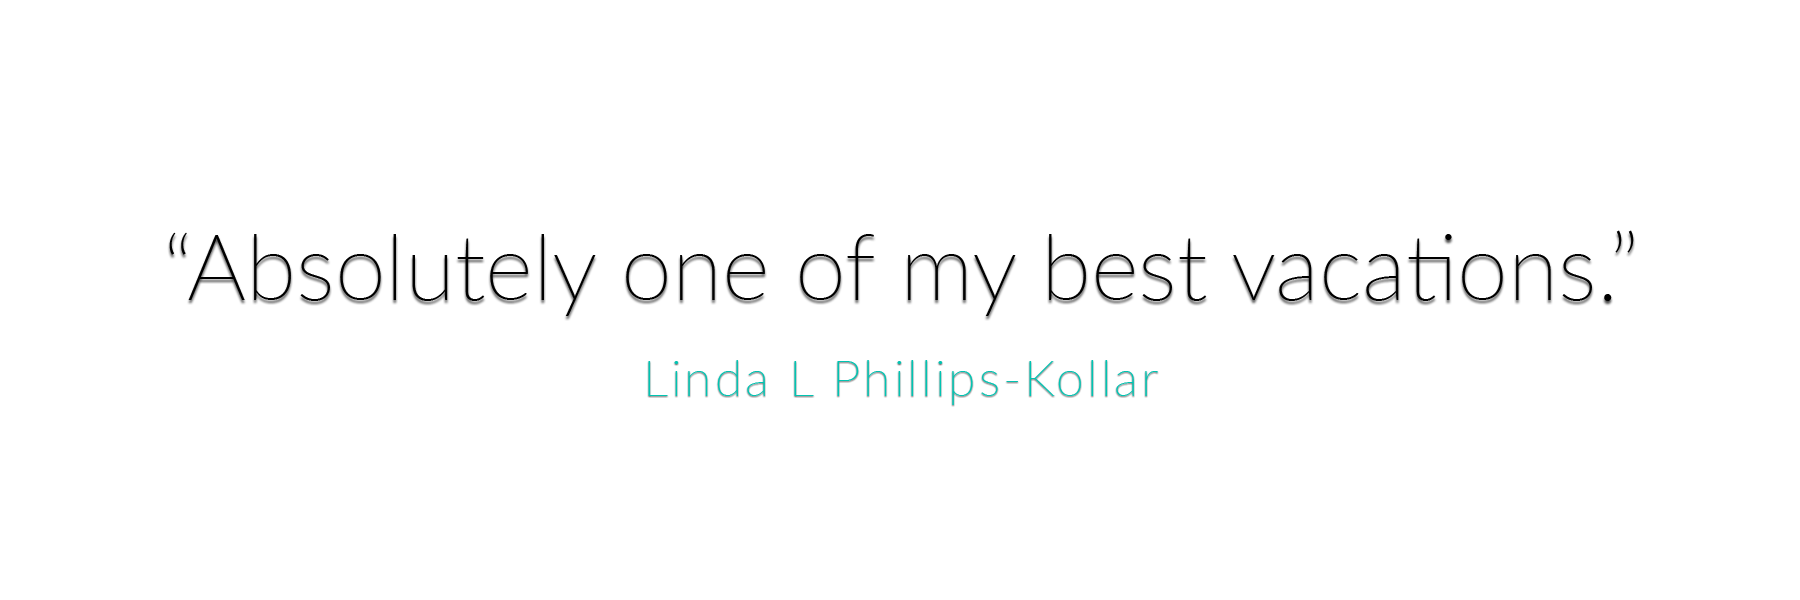 Linda L Phillips-Kollar Testimonial